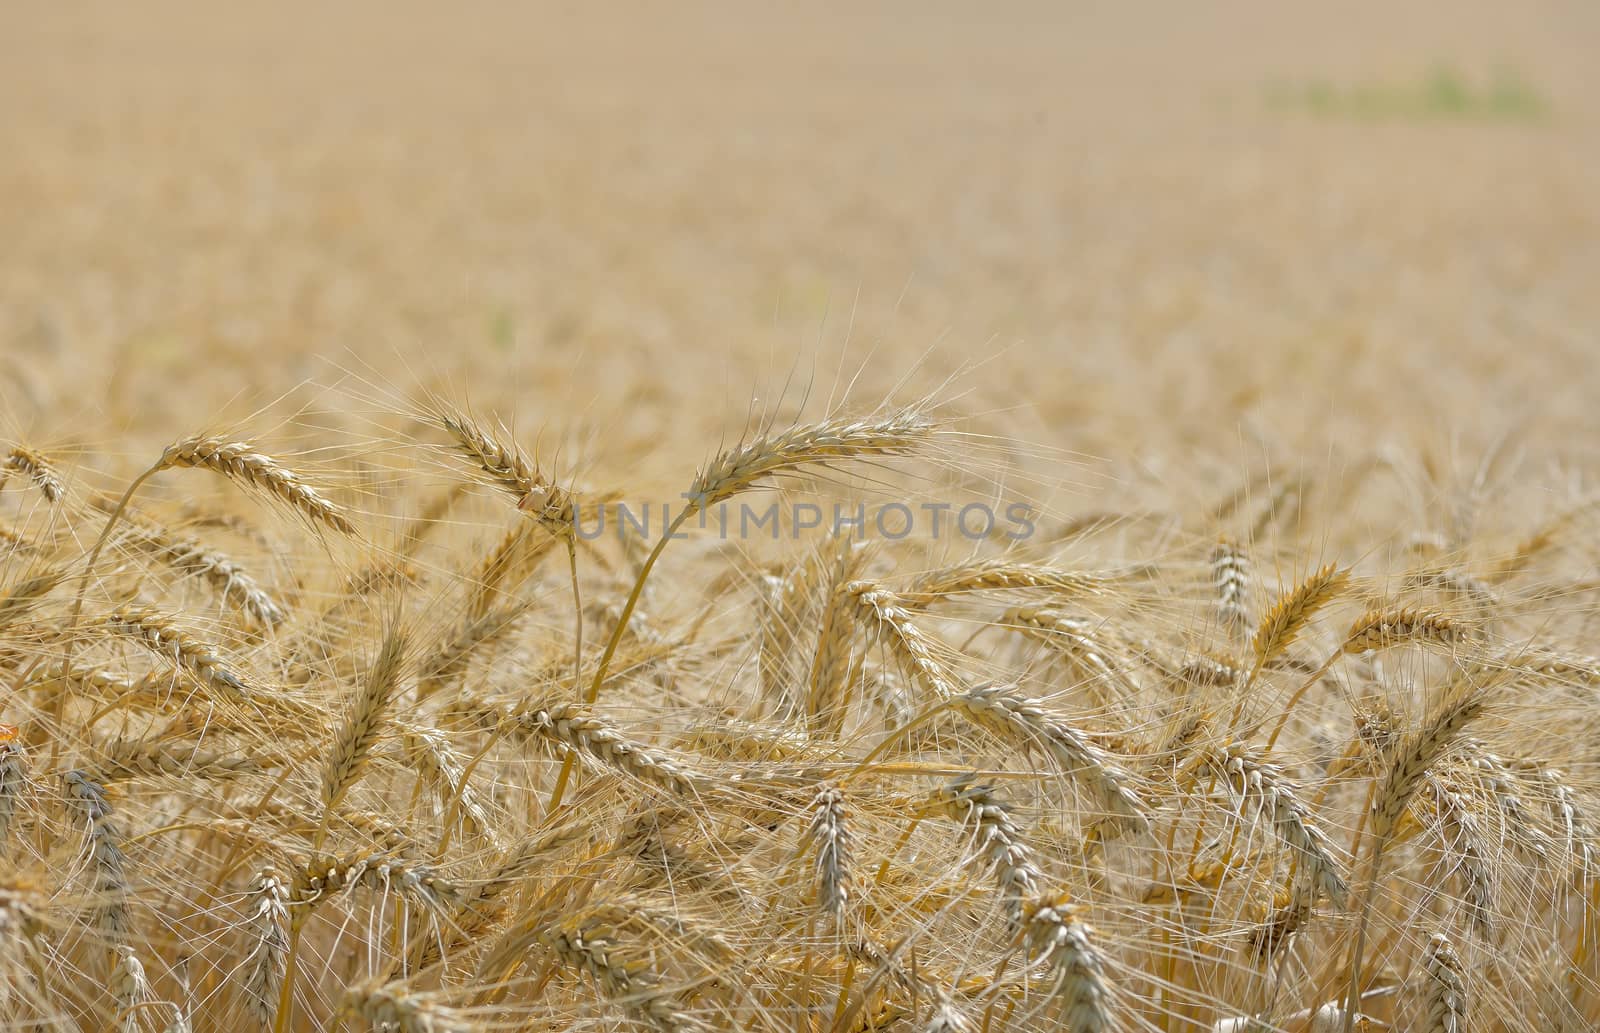 Details of ripe wheat field